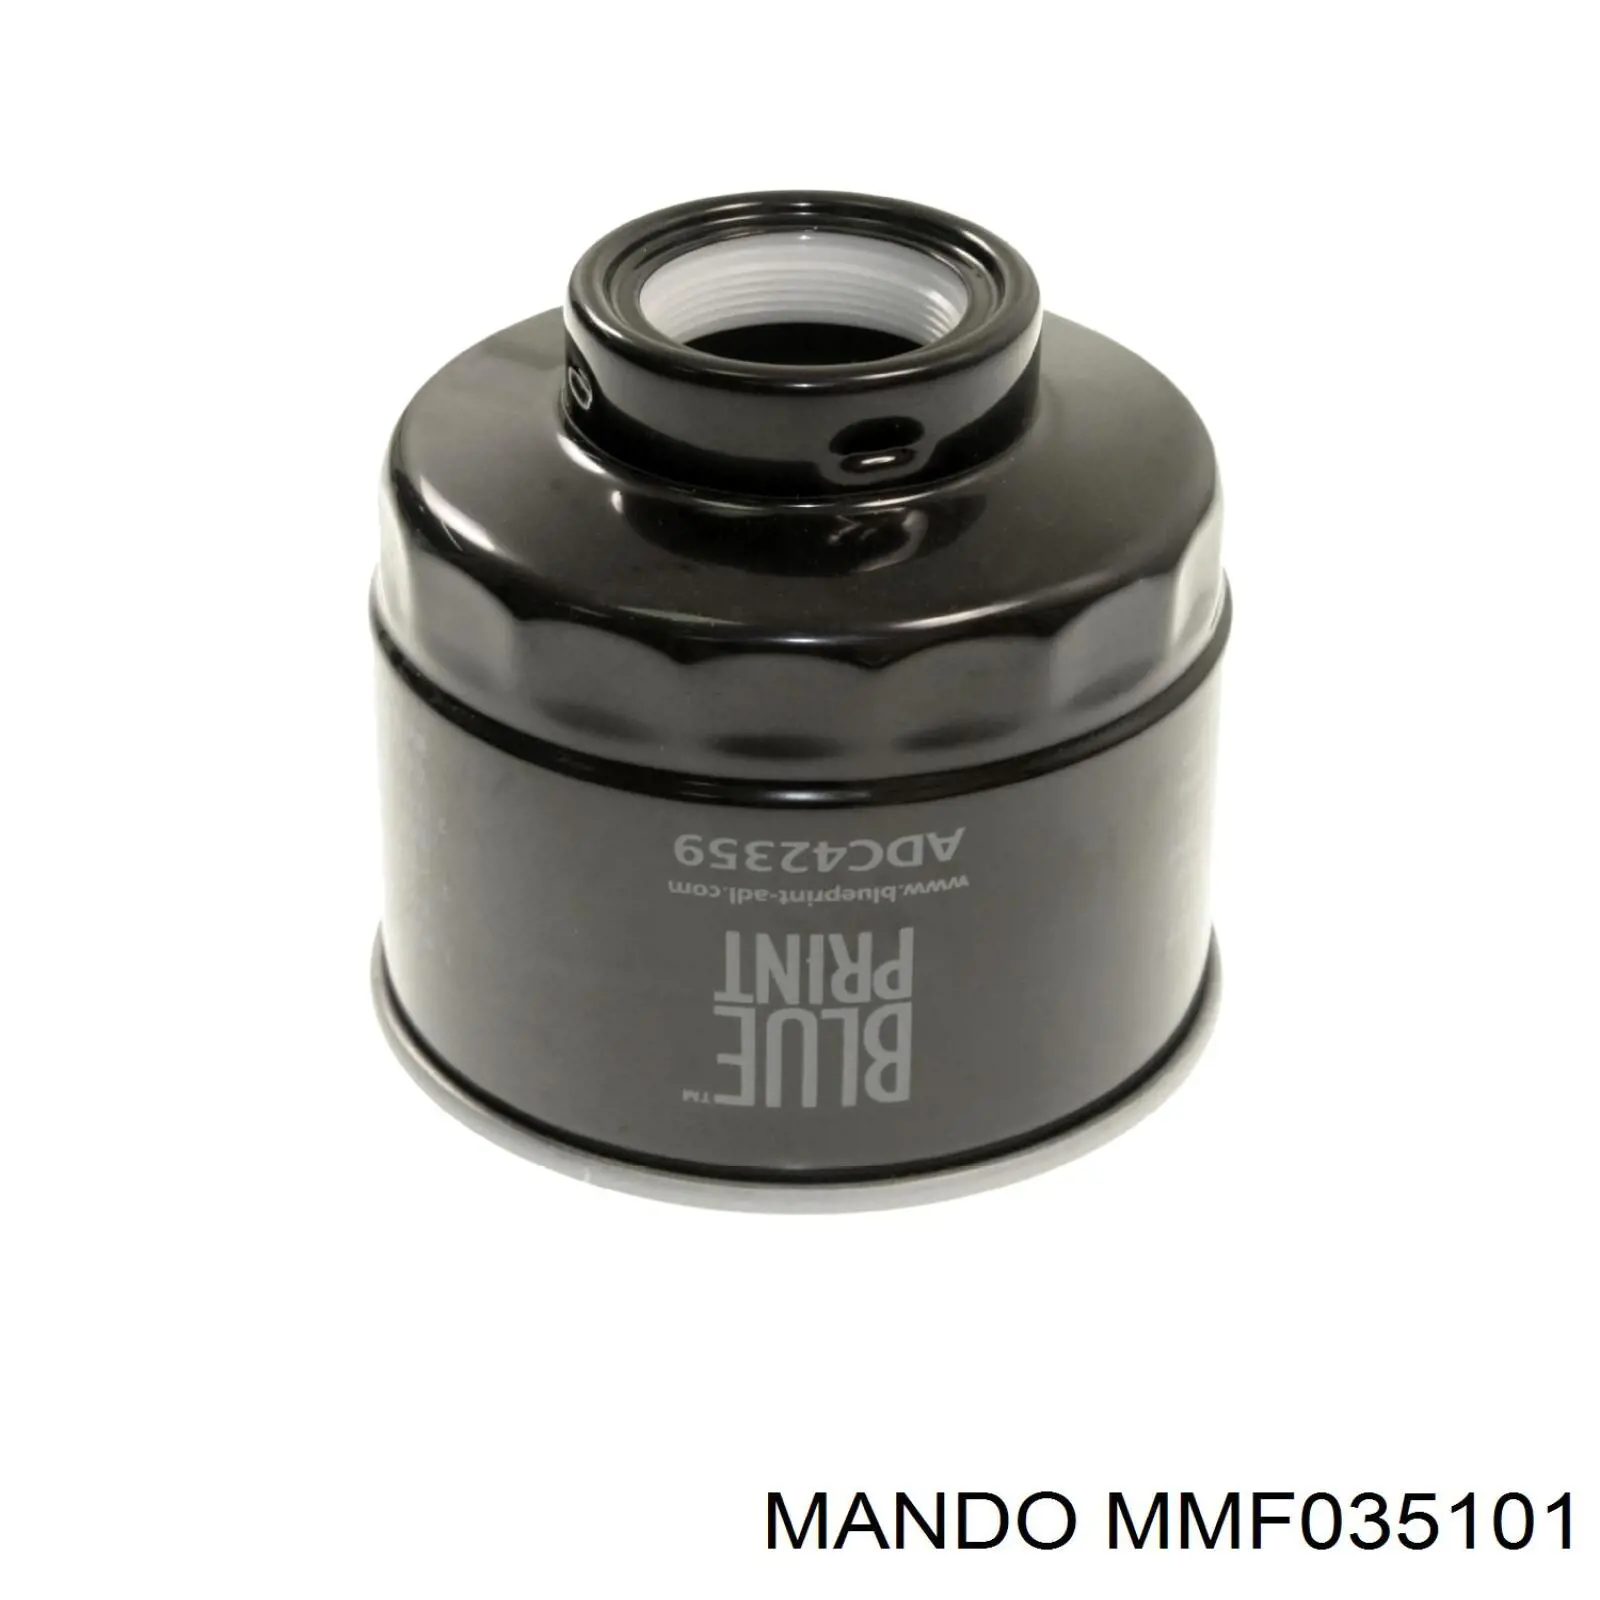 MMF035101 Mando топливный фильтр